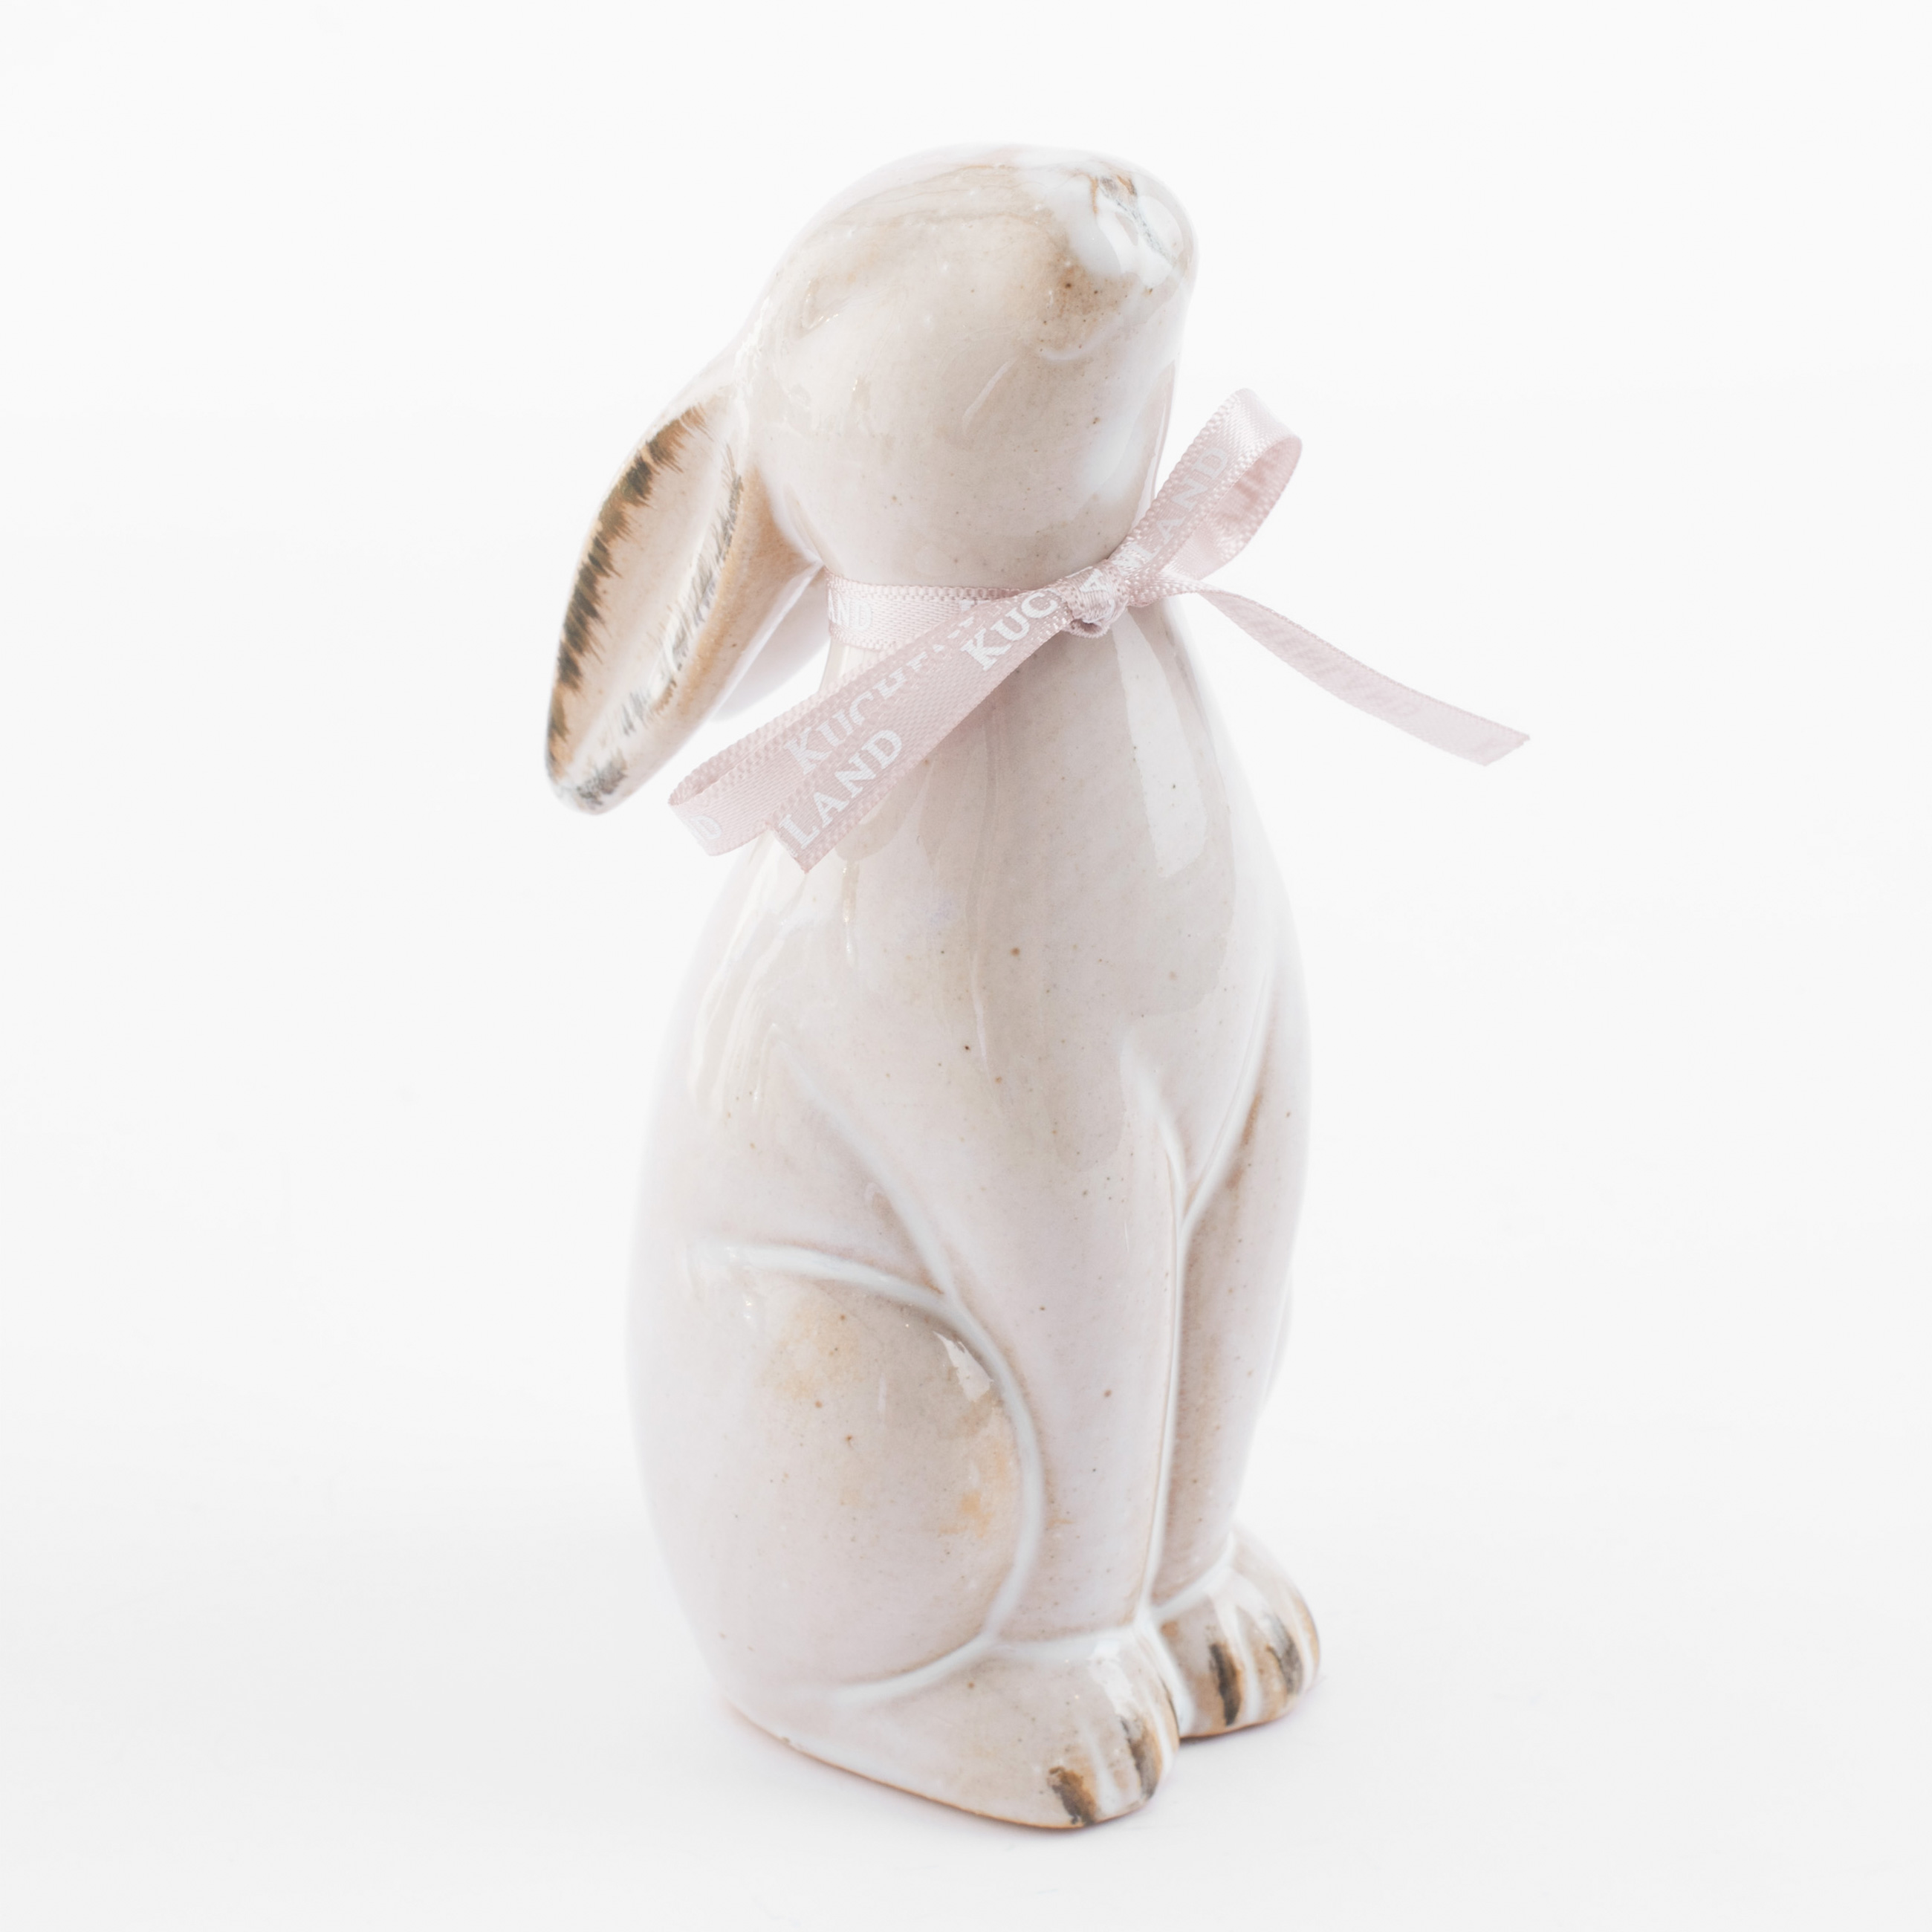 Статуэтка, 14 см, фарфор P, бежевая, Кролик сидит, Natural Easter изображение № 3